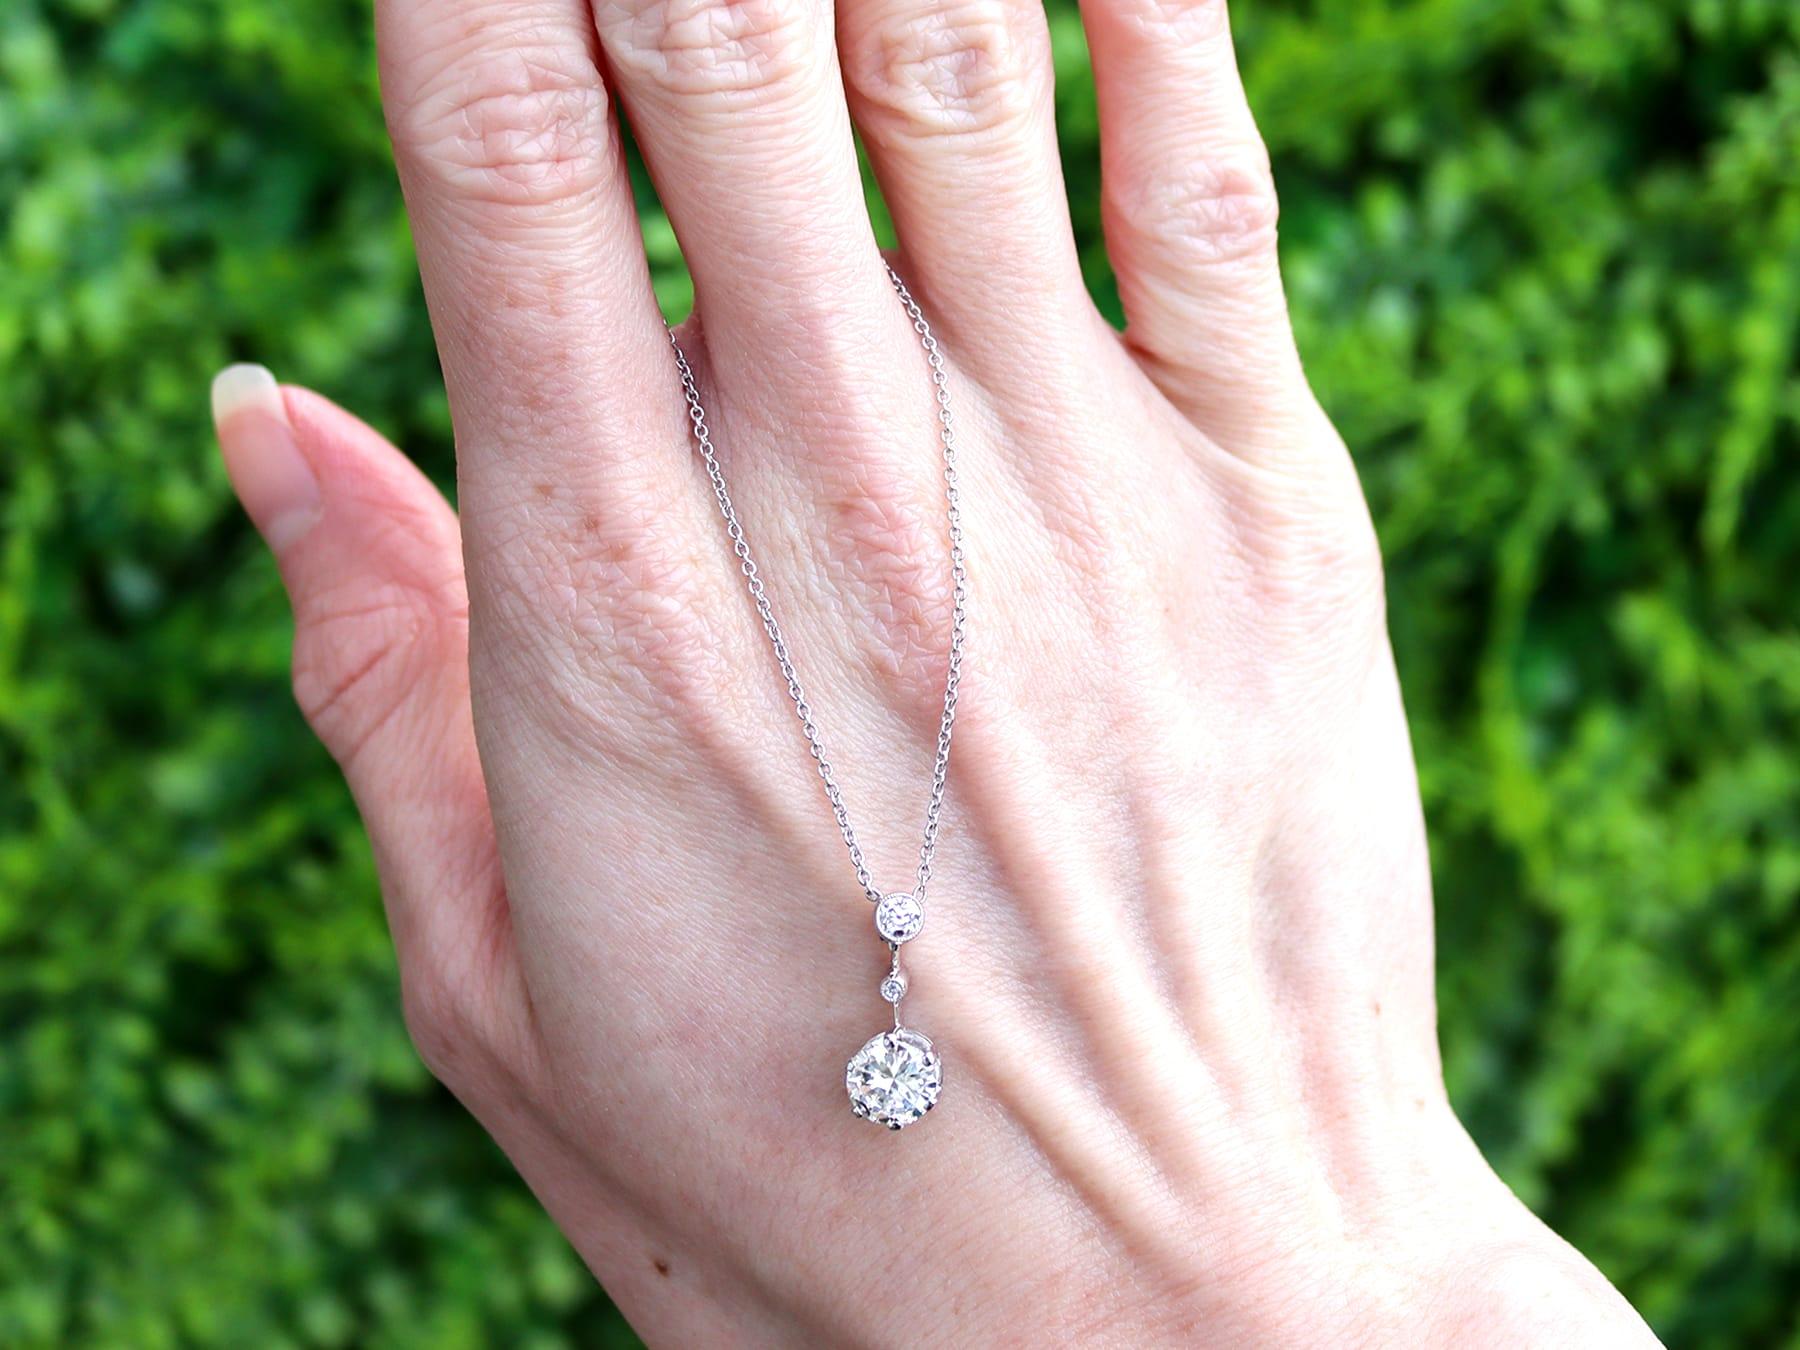 Eine feine und beeindruckende antike Diamantkette mit 1,13 Karat in Platin; Teil unserer vielfältigen Diamantschmuckkollektionen aus den 1920er Jahren.

Dieser schöne und beeindruckende antike Diamantanhänger ist aus Platin gefertigt.

Die Halskette